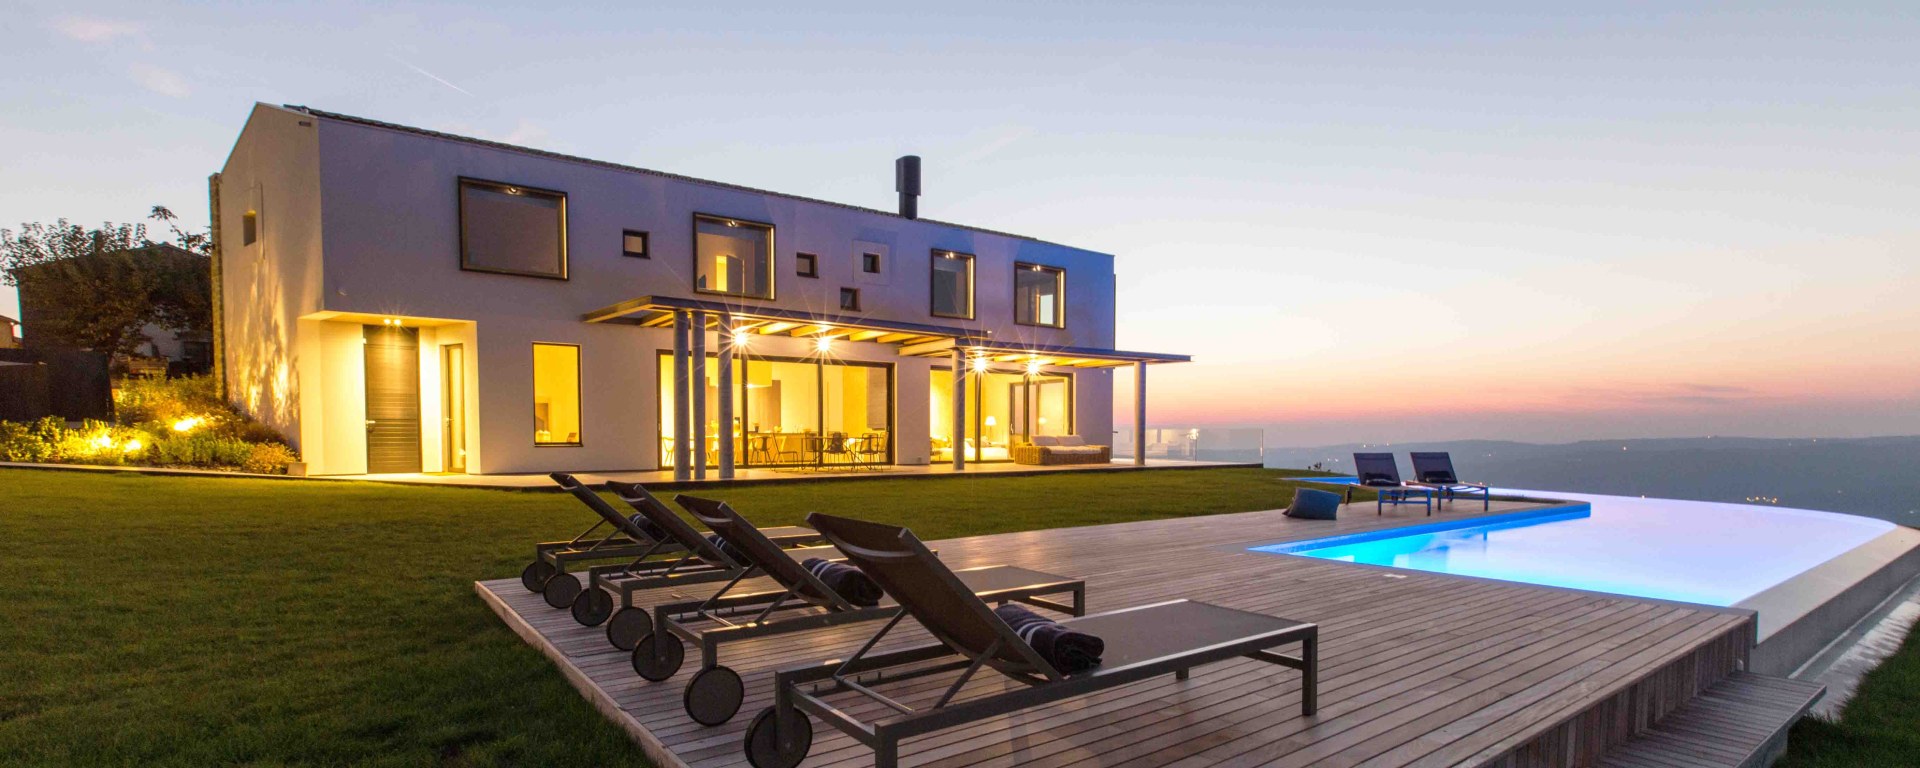 Ferienhaus Kroatien 6 Personen - Istria Highland Villa